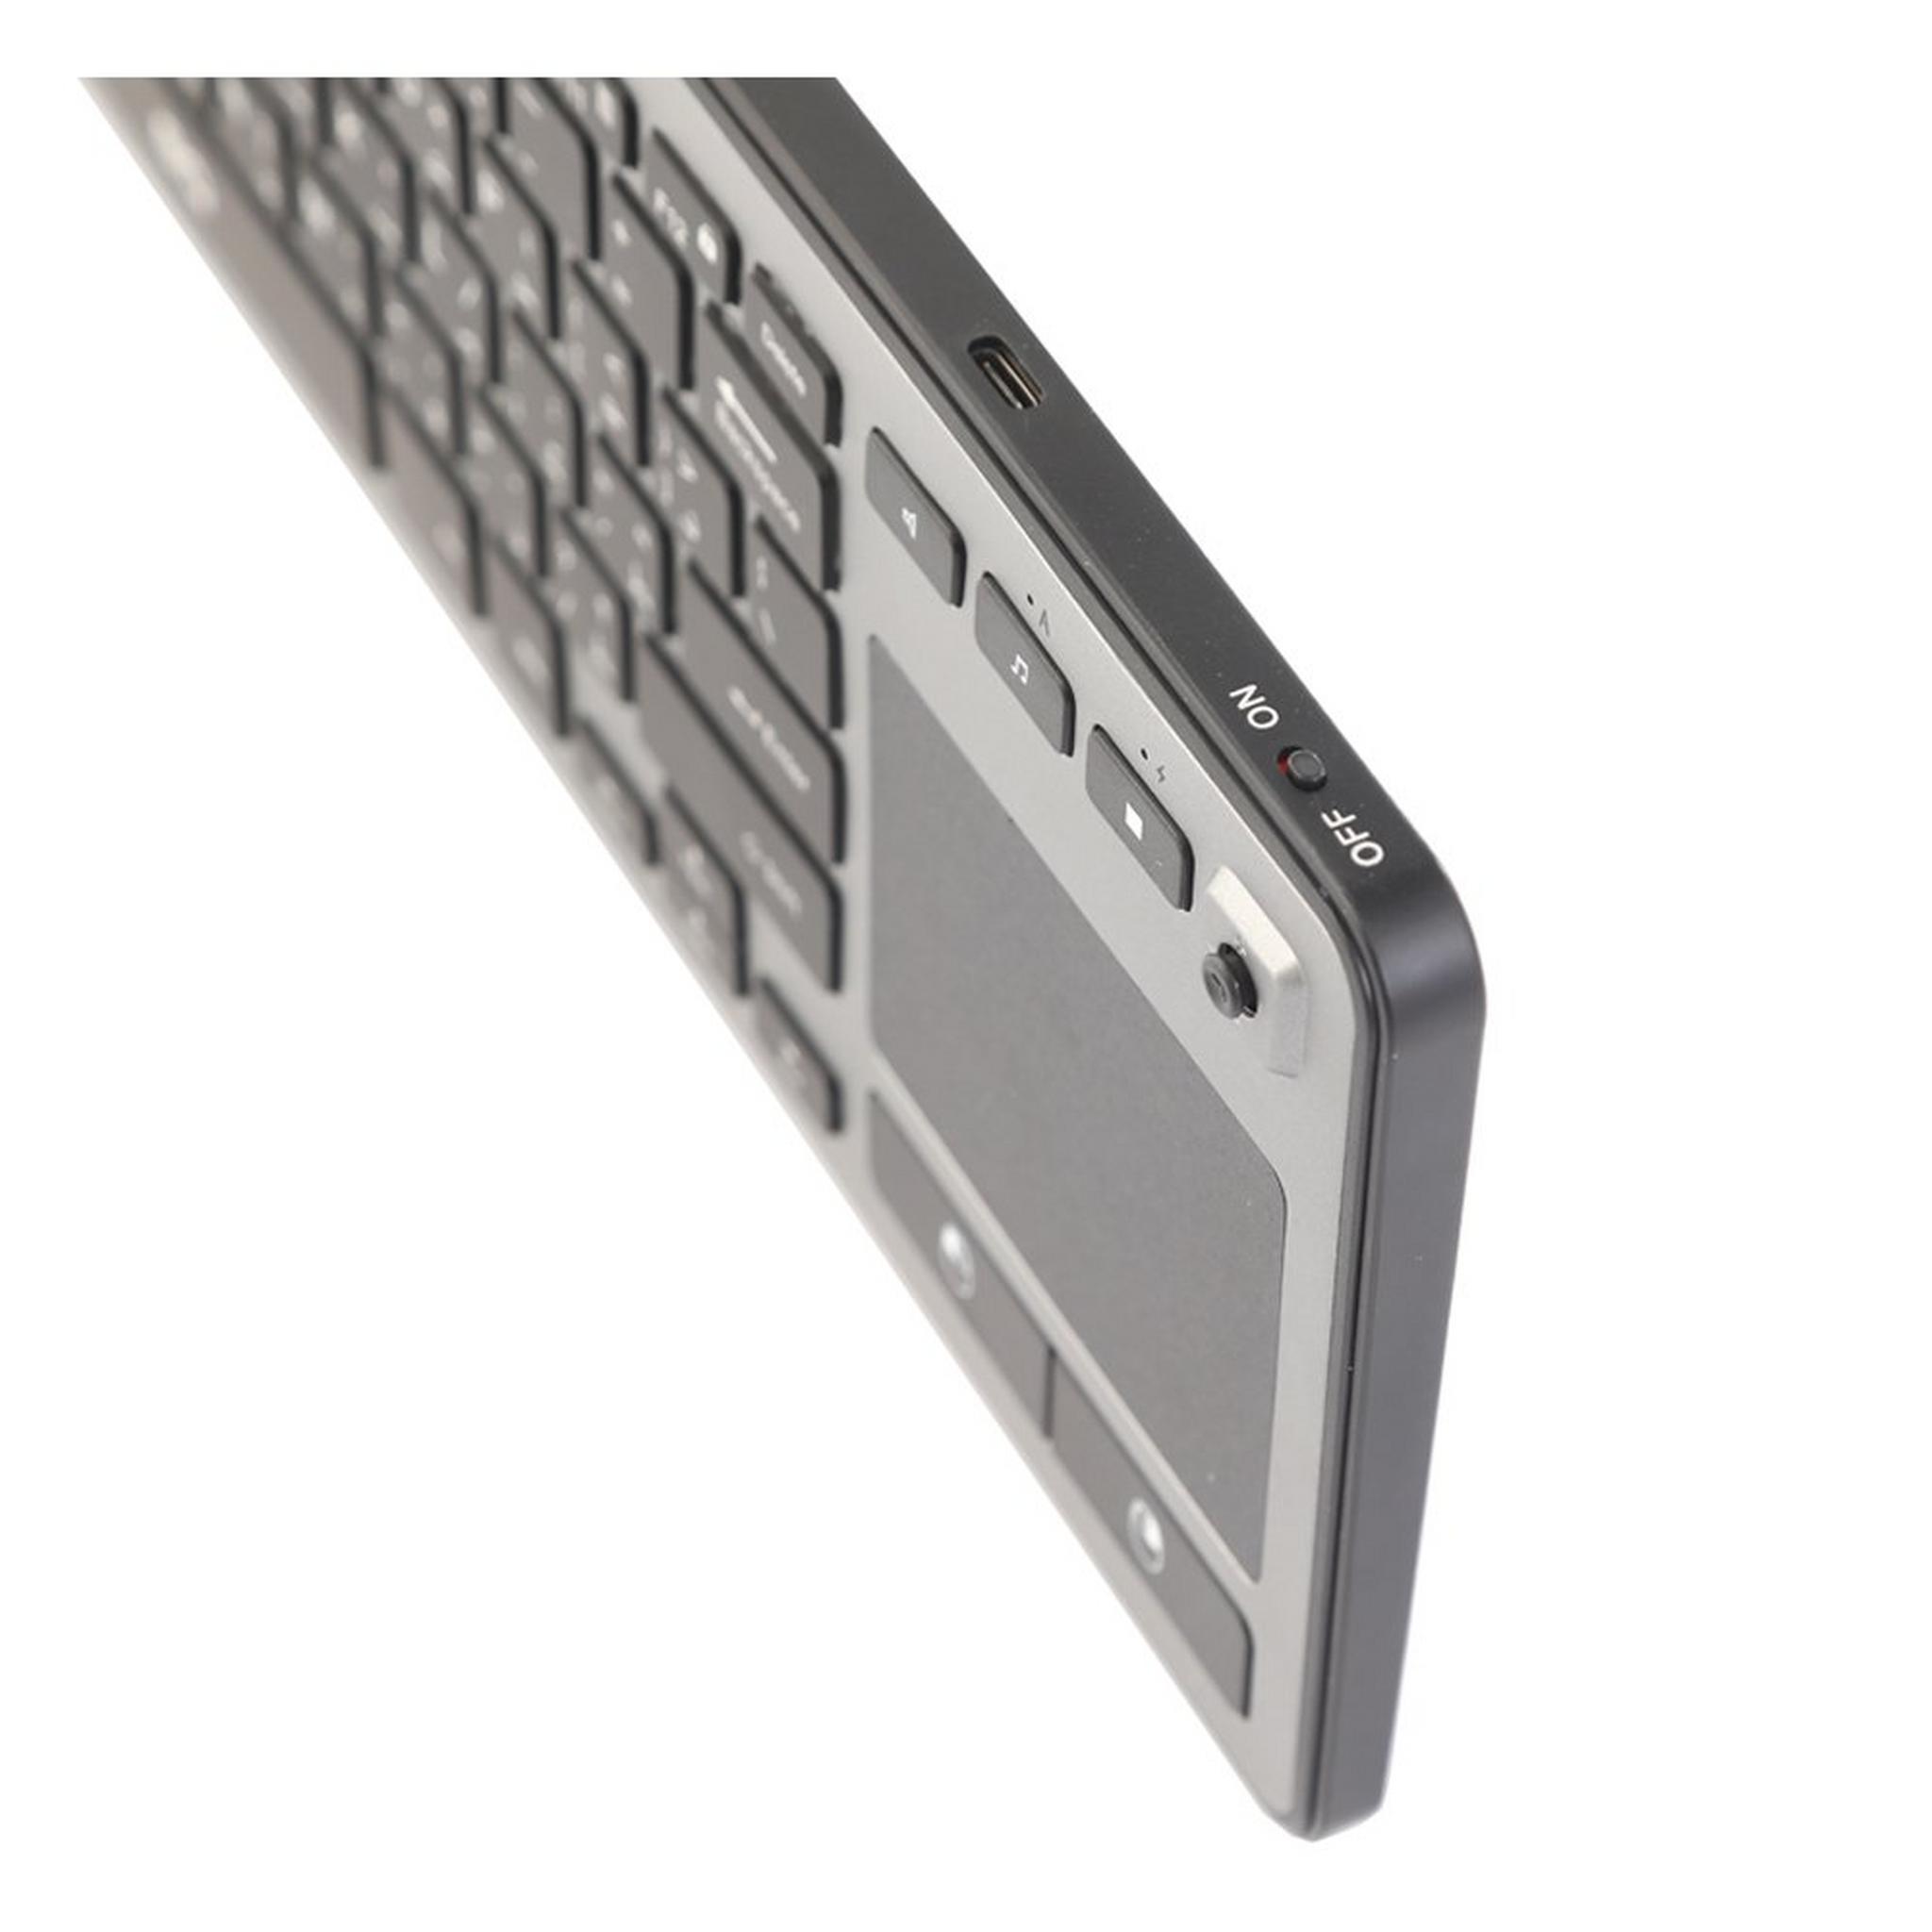 EQ Bluetooth Keyboard 3.0 + TouchPad (WT001Blutooth Keyb)